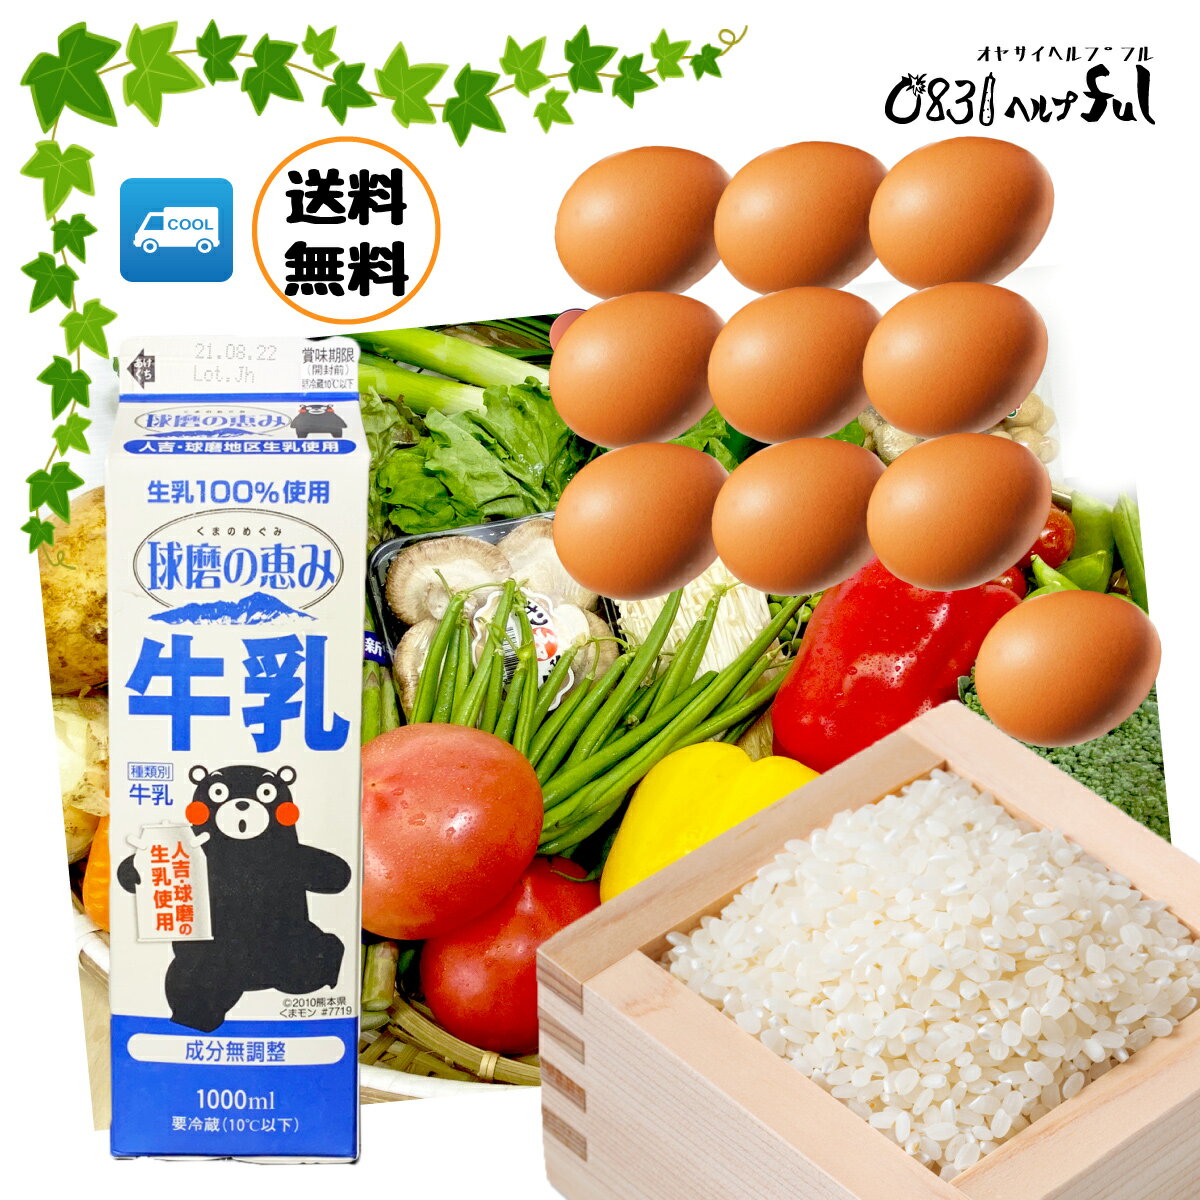 【選べる野菜セット】野菜と果物12品以上 +お米 卵 乳製品 送料無料 九州の市場から新鮮野菜をお届けします。0831野…